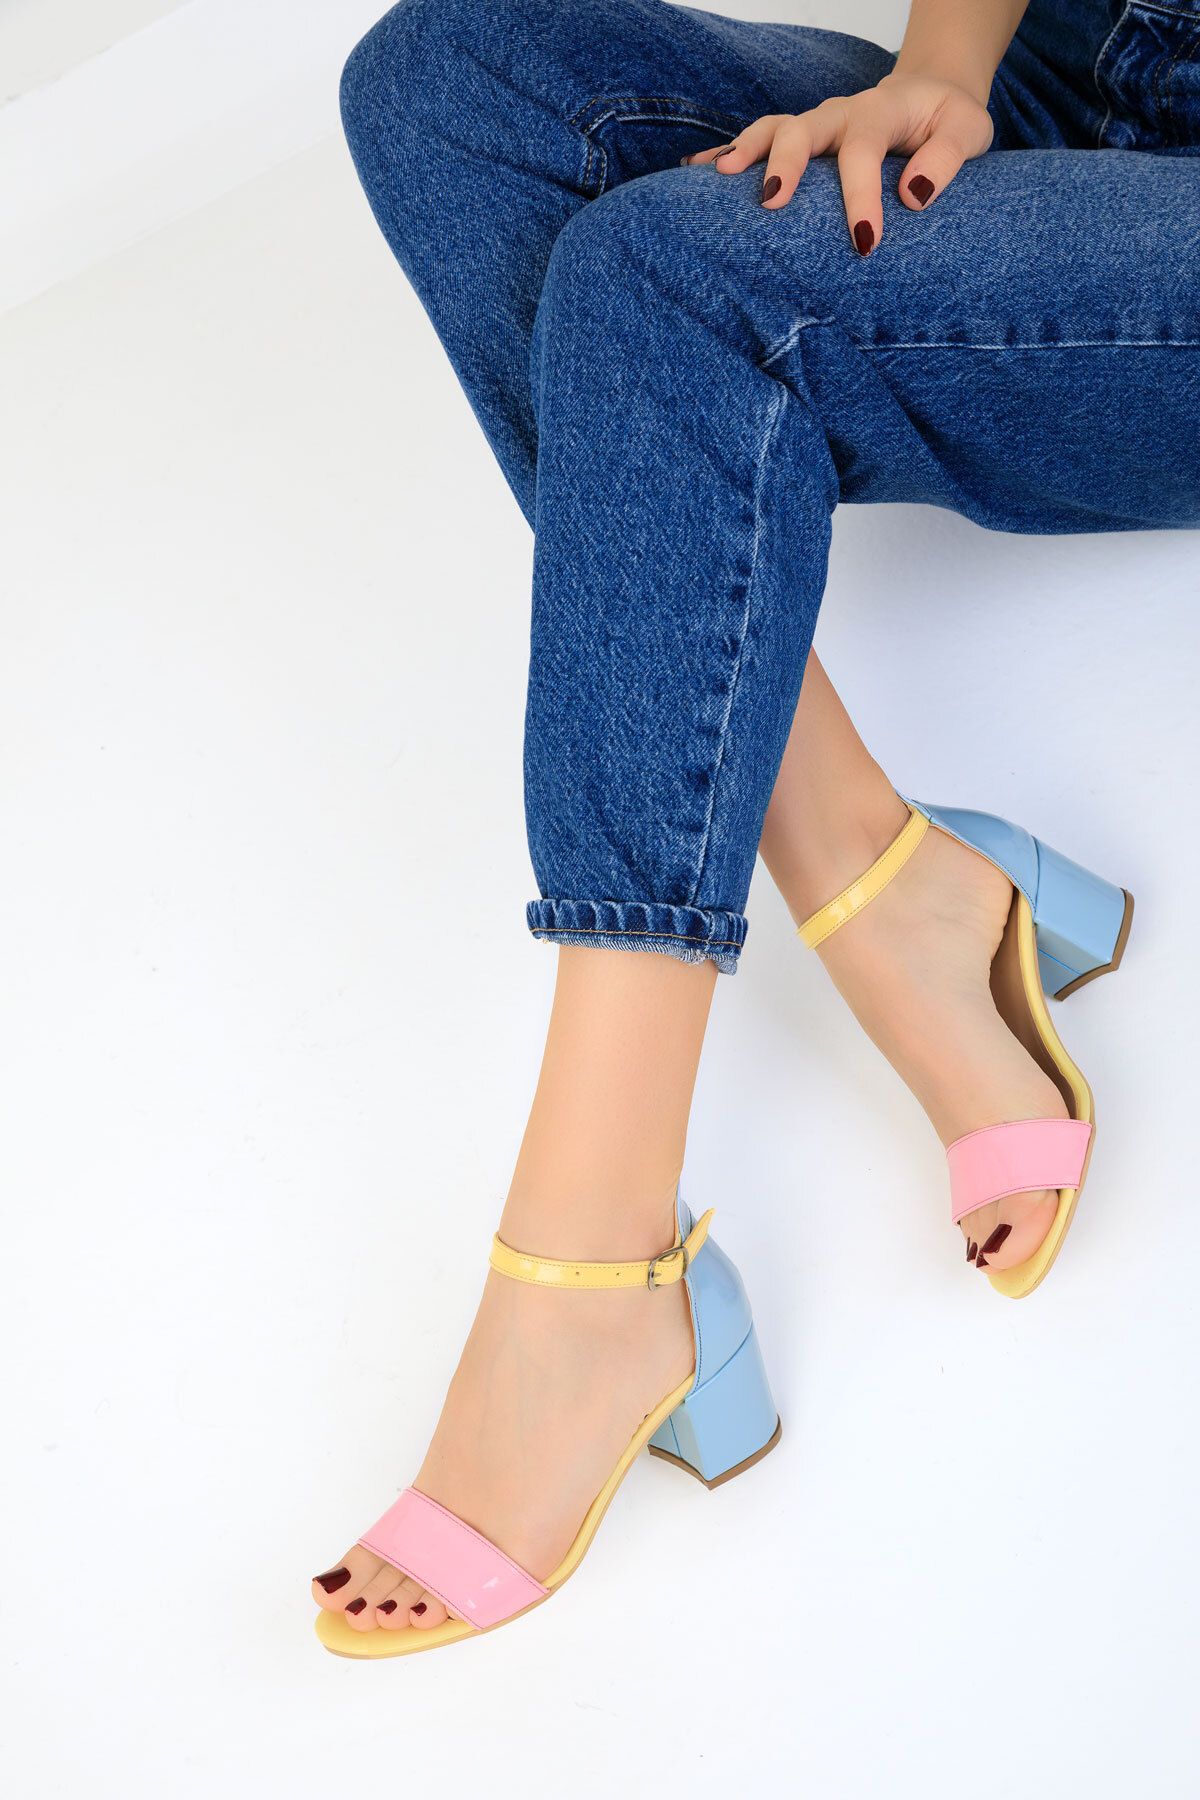 SOHO Sarı-Pudra-Mavi Kadın Klasik Topuklu Ayakkabı 14529